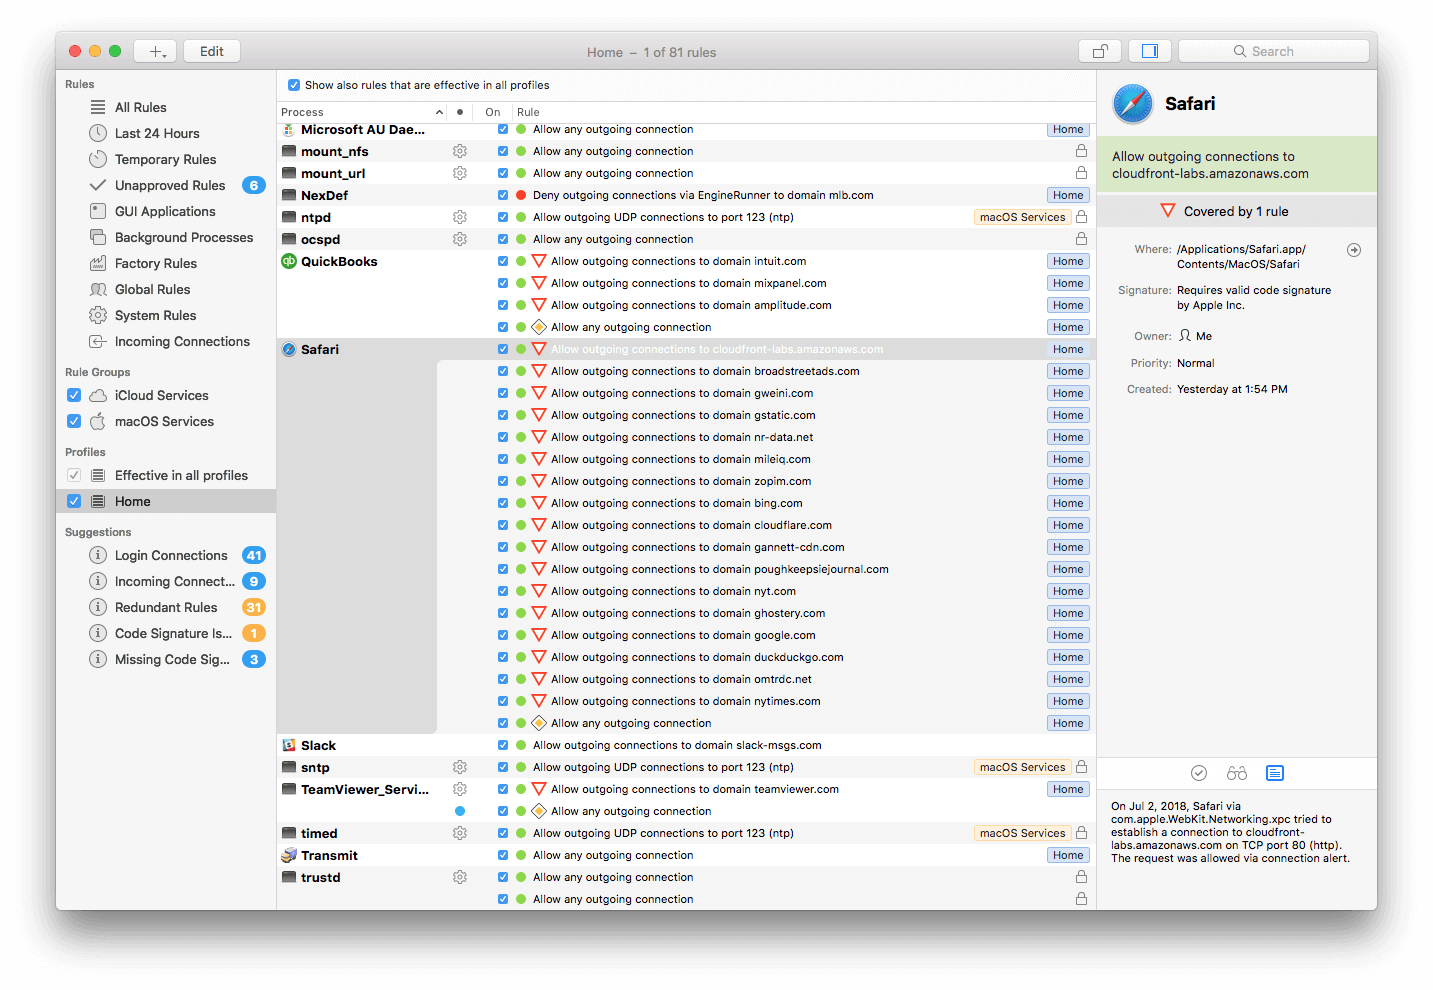 little snitch torrent mac